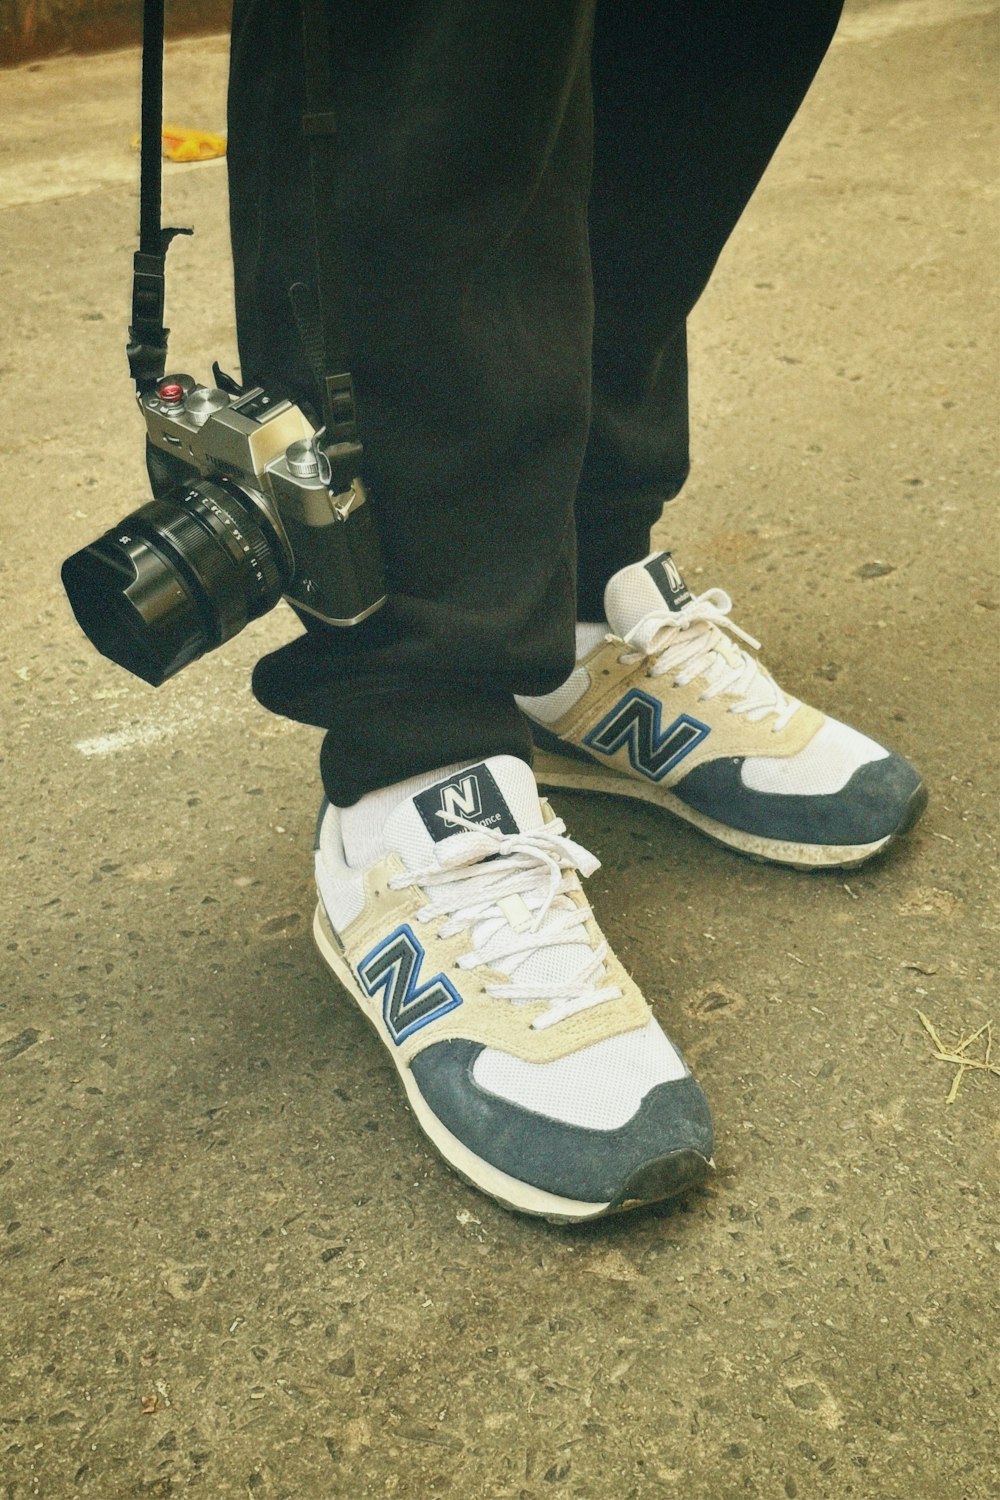 una persona in piedi a terra con una macchina fotografica